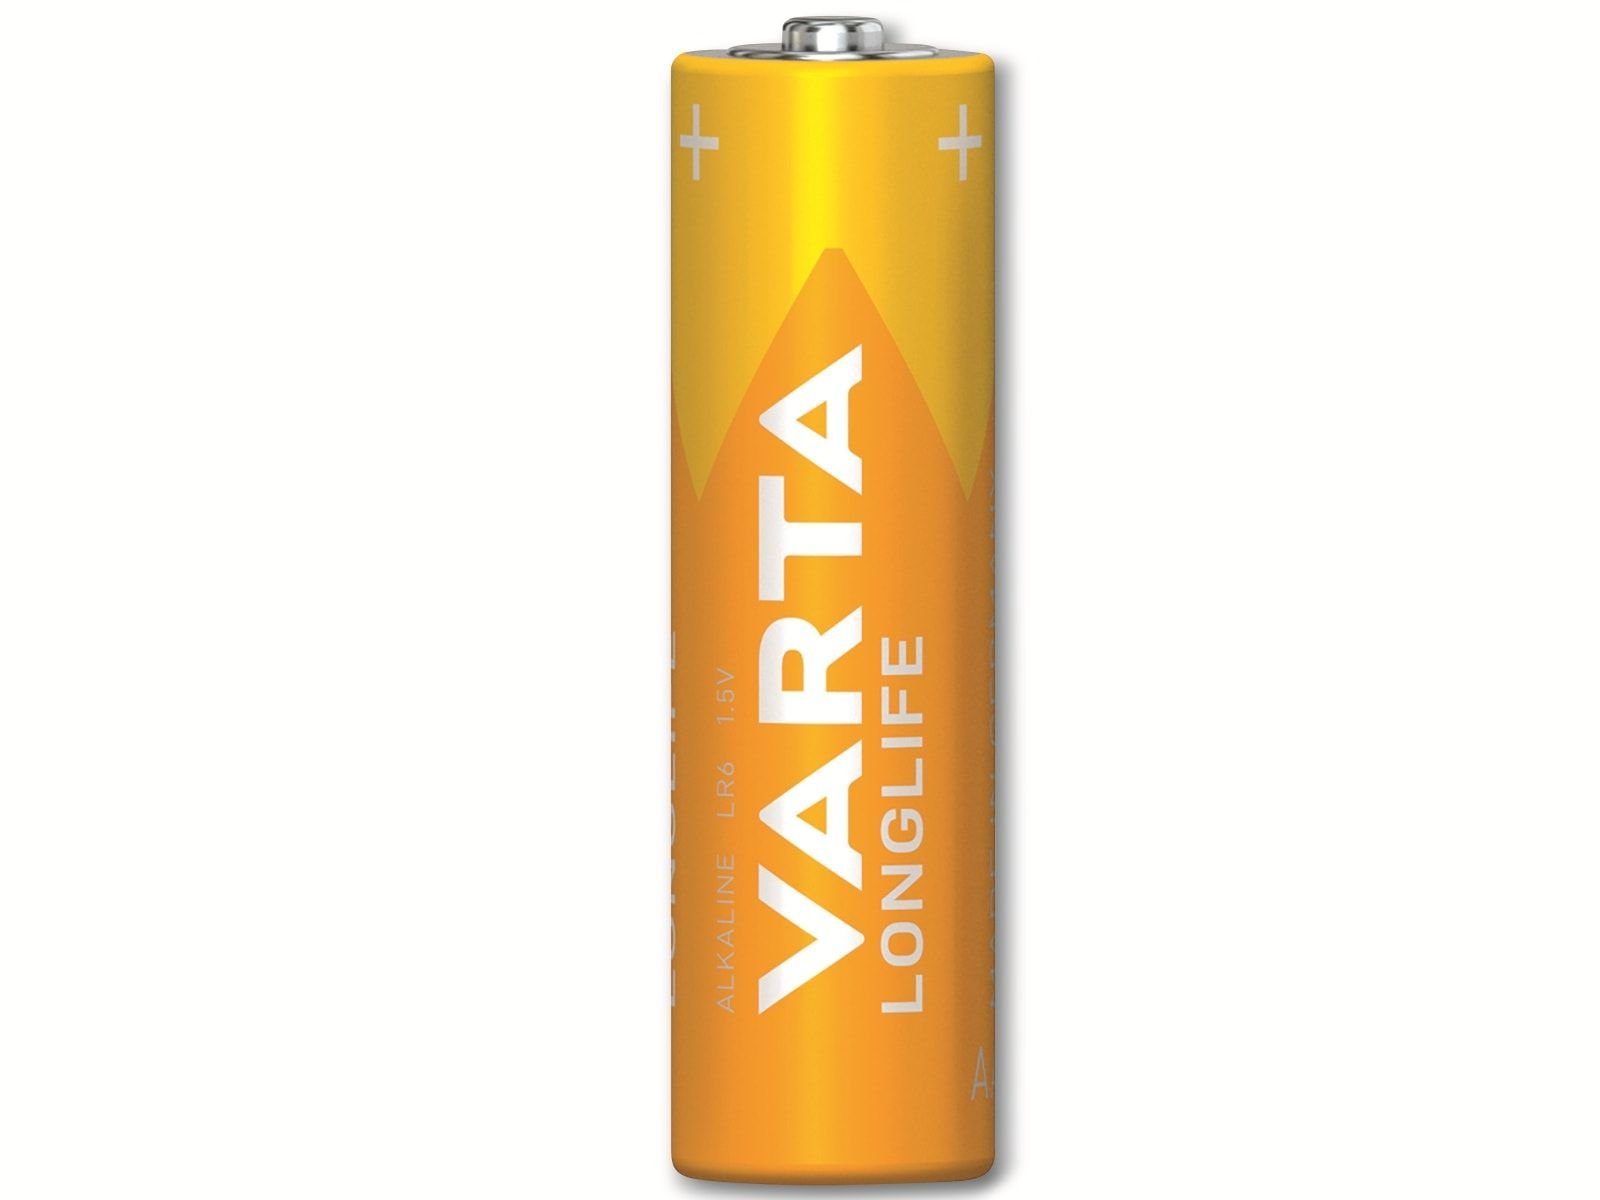 VARTA VARTA Batterie Mignon, 1.5V LR06, AA, Alkaline, Batterie